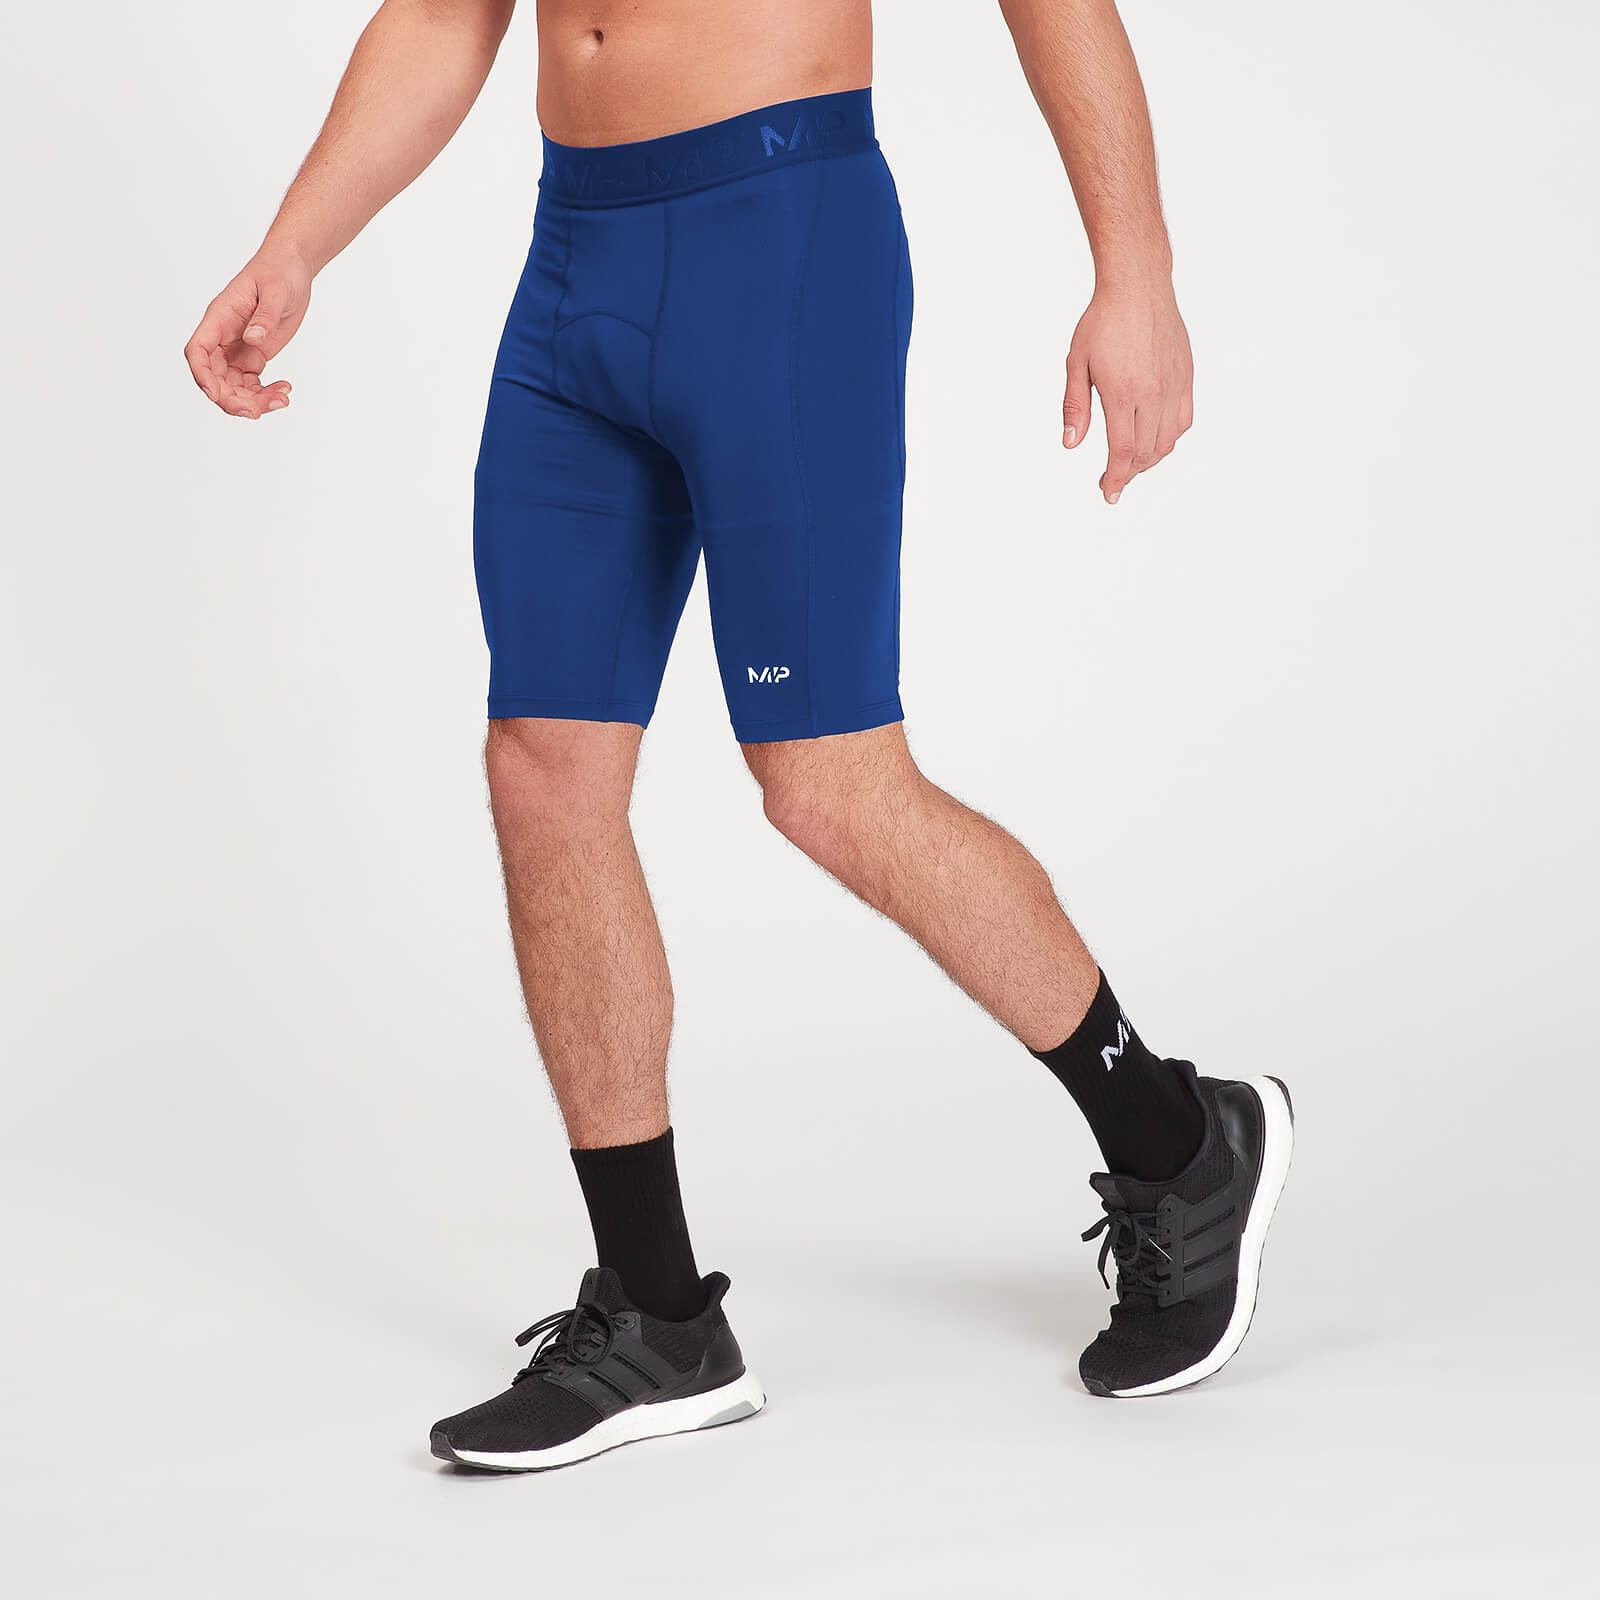 Pantalón corto interior de deporte de entrenamiento para hombre de MP - Azul intenso - XXXL